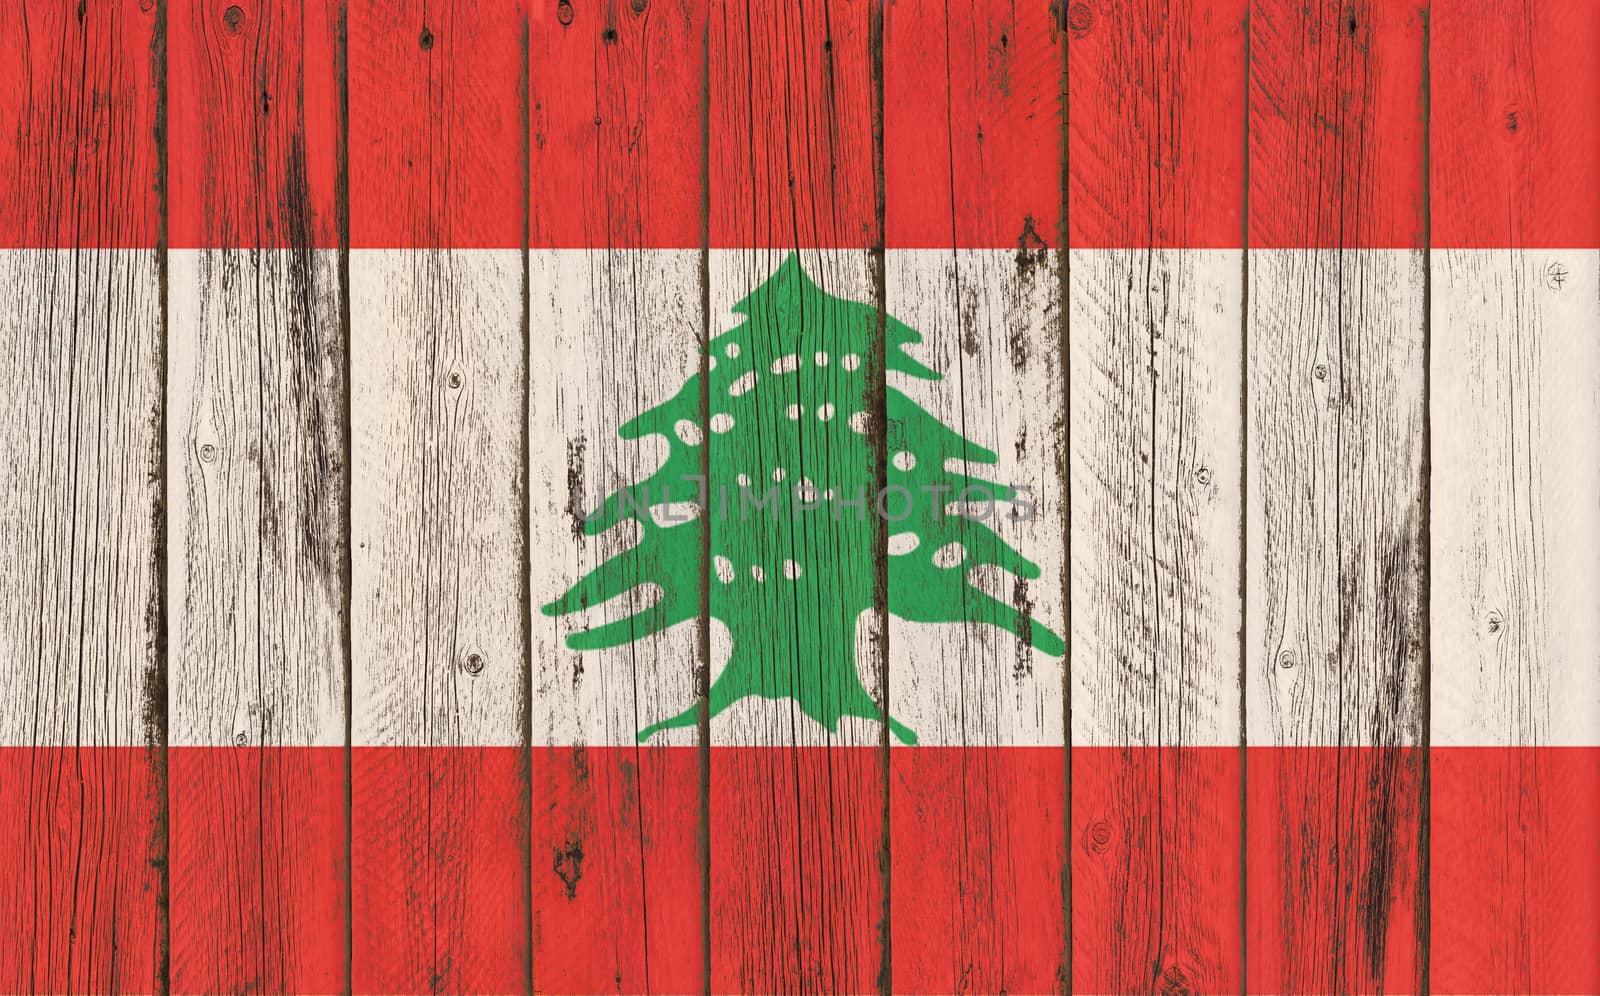 
Flag of Lebanon painted on wooden frame